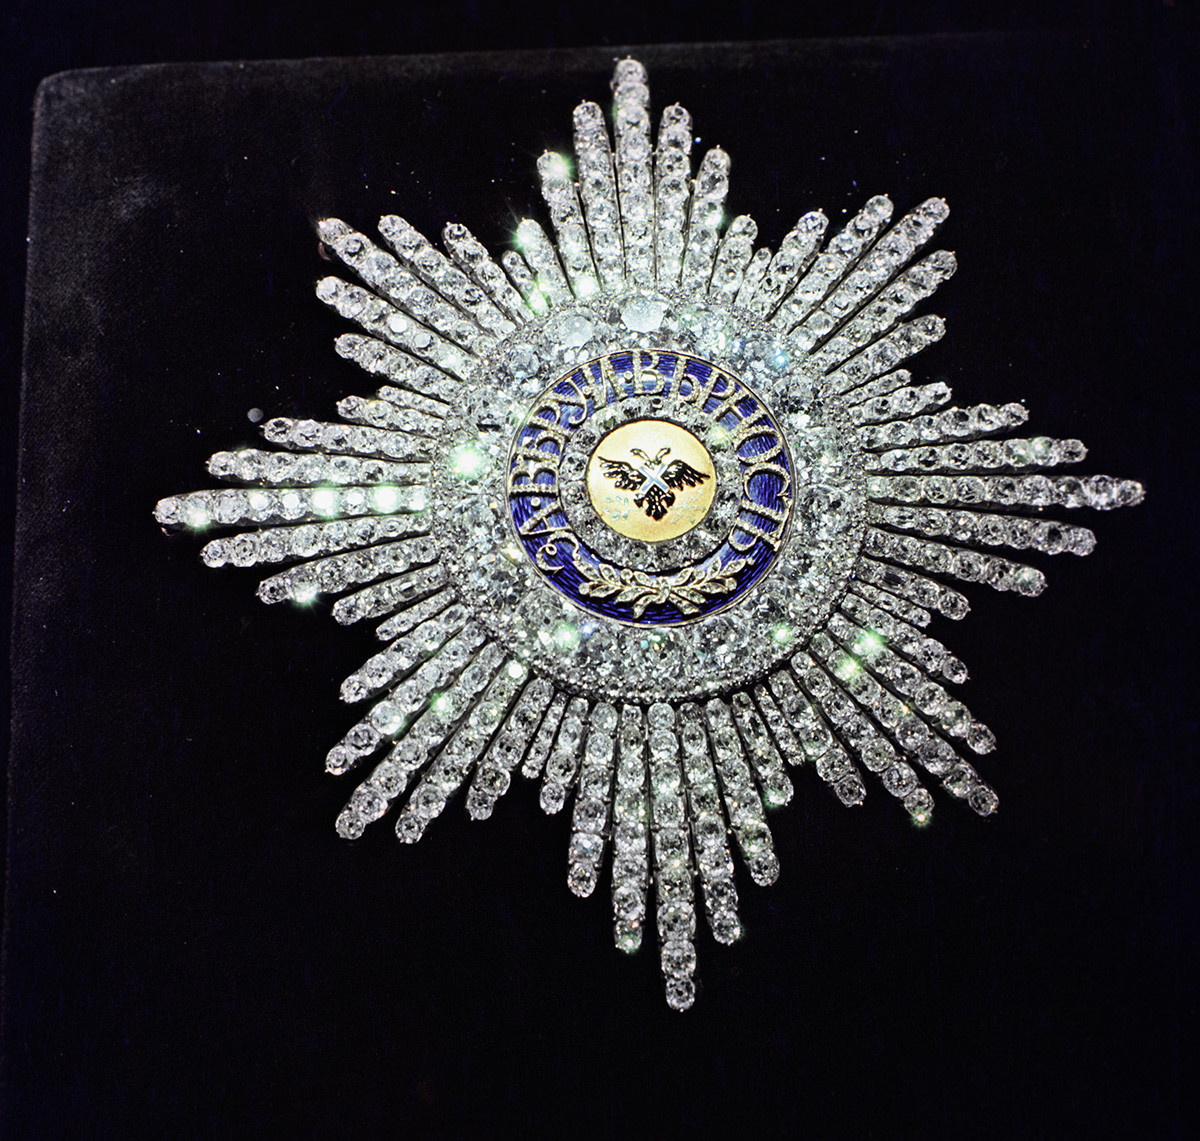 The Star of the Order of St. Andrew. 8х8 cm.

